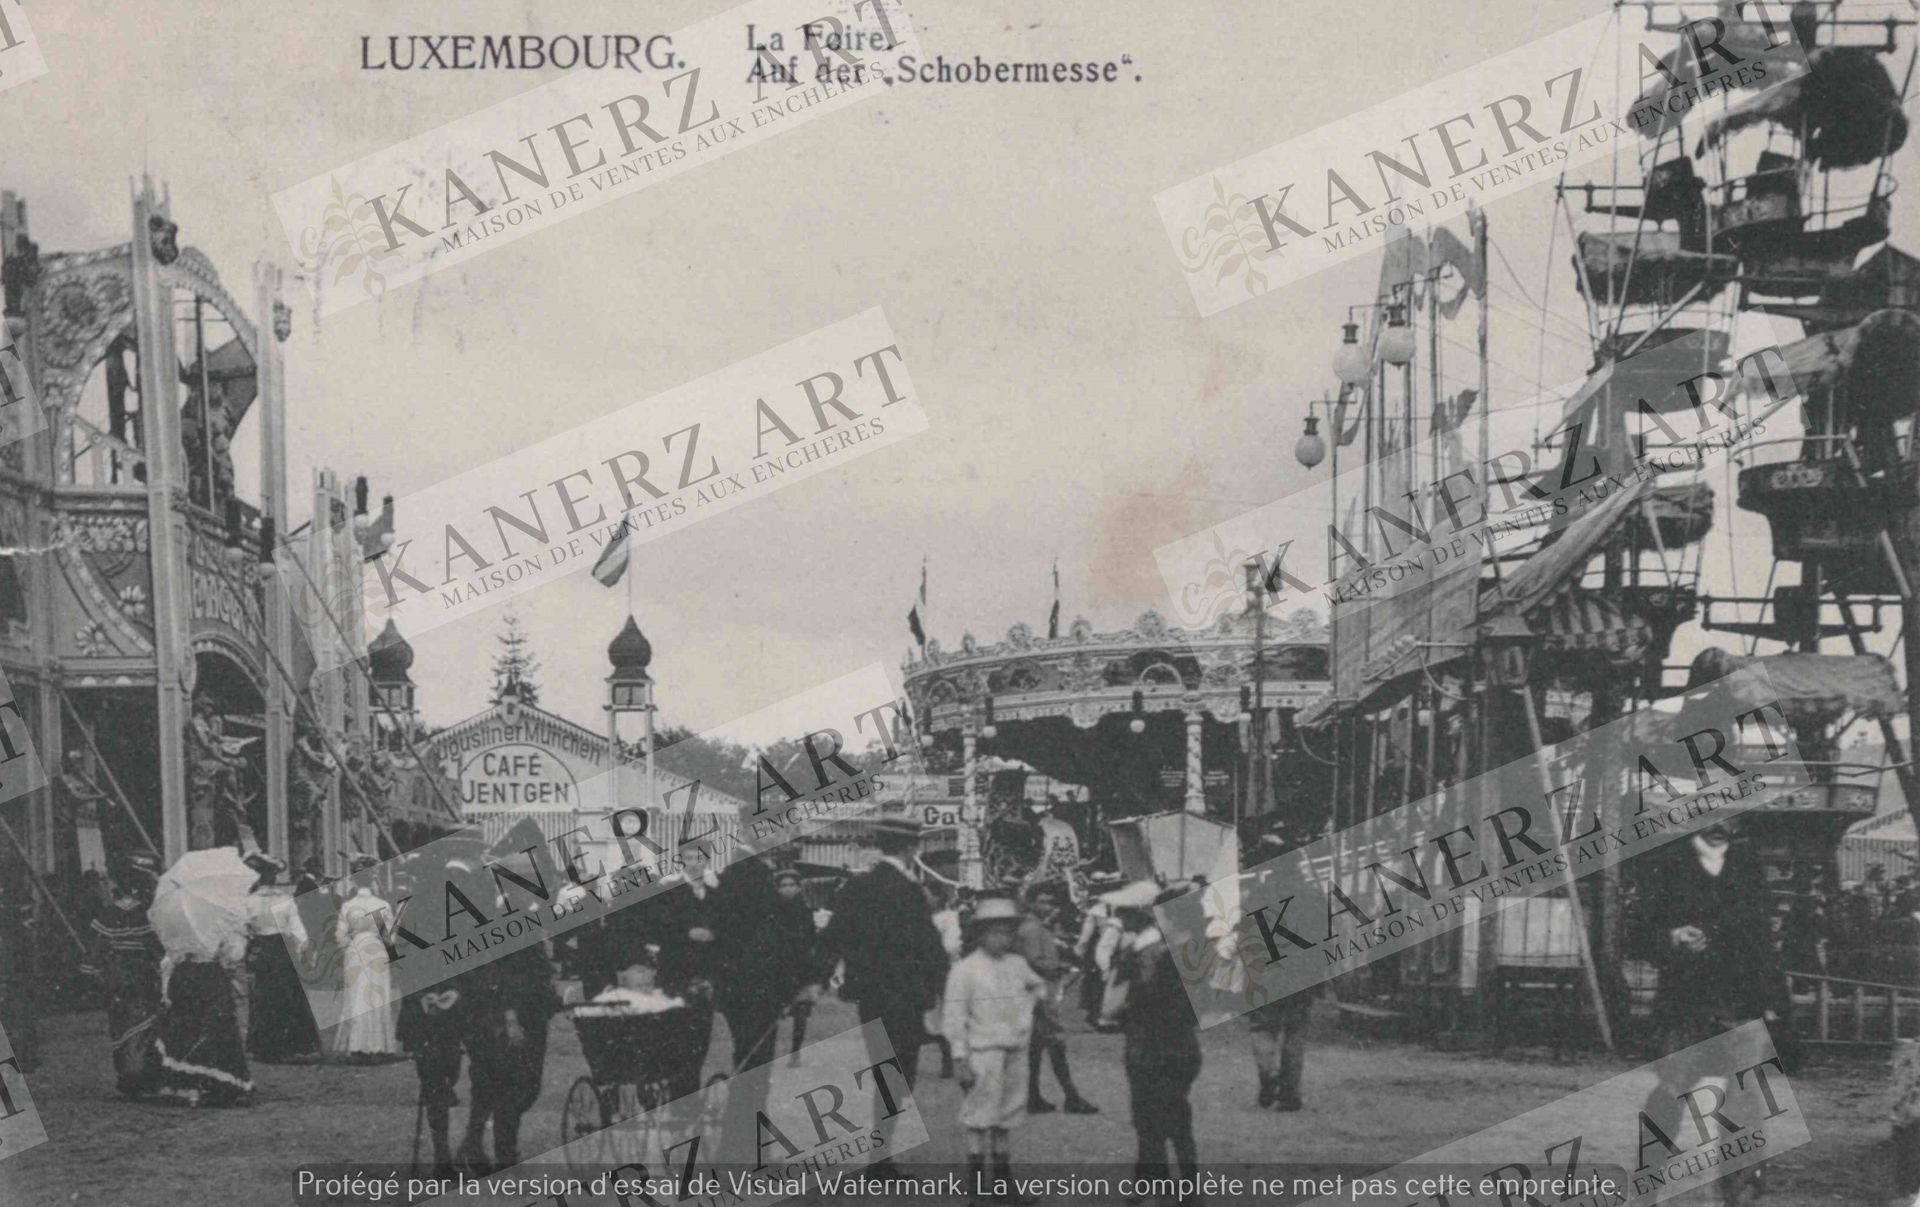 Null (官方/SCHOBERMESSE)明信片：Schueberfouer "La Foire"。Auf der Schobermesse"，摄影家SCHO&hellip;